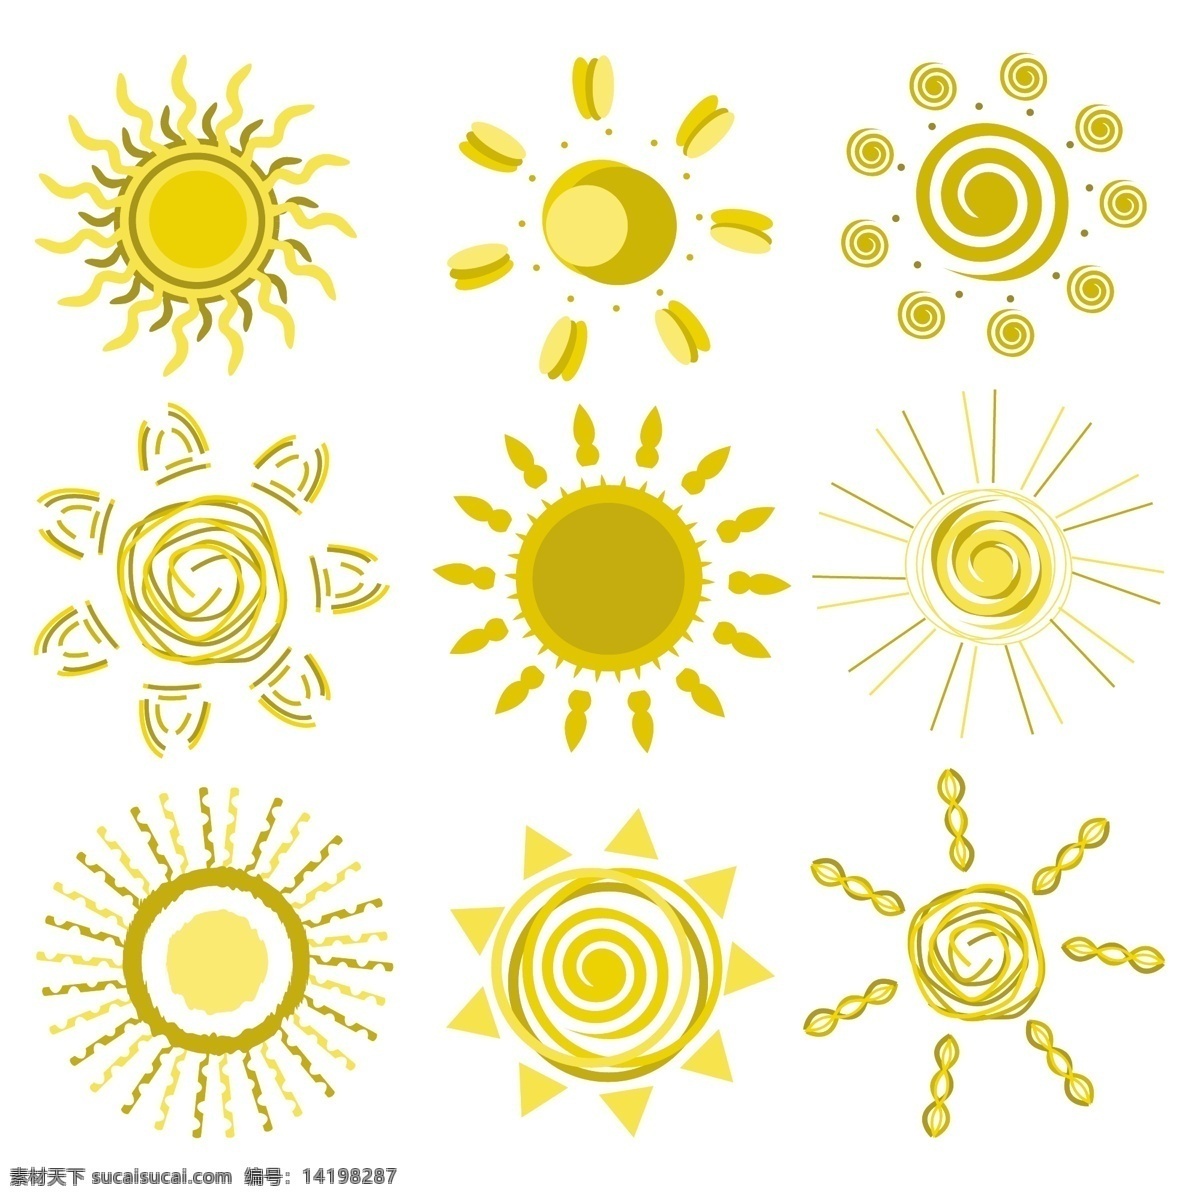 可爱 有趣 太阳 表达 载体 卡通 可爱的 橙色的 温暖的 黄色的 可爱的表情 向量 矢量图 其他矢量图